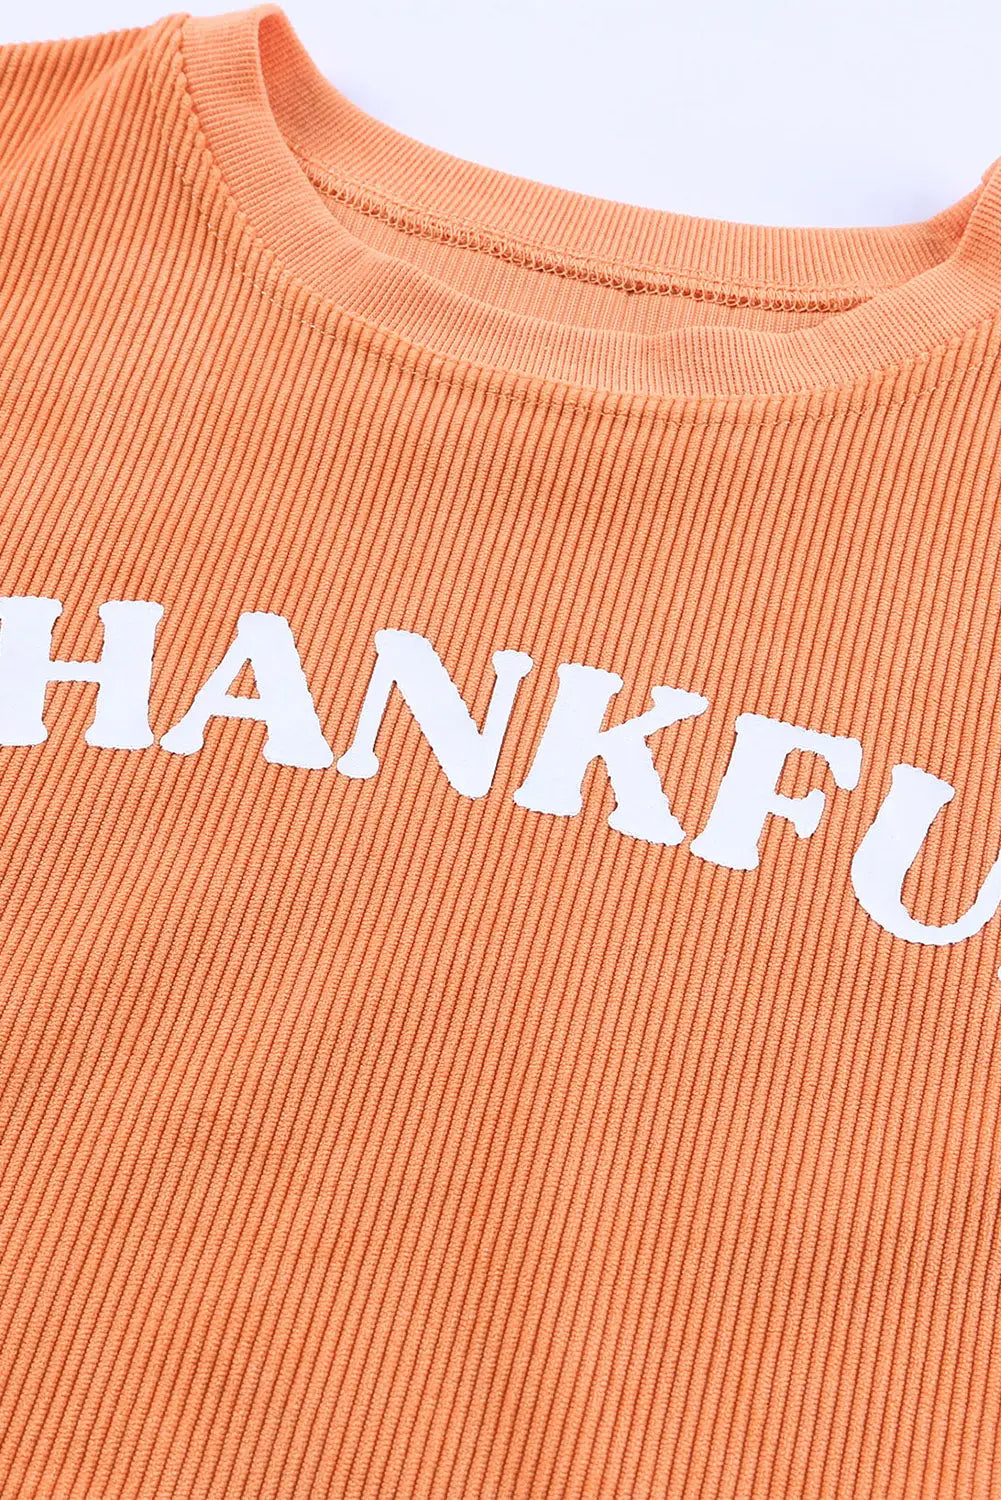 Orange thankful ribbed corded oversized sweatshirt - sweatshirts & hoodies